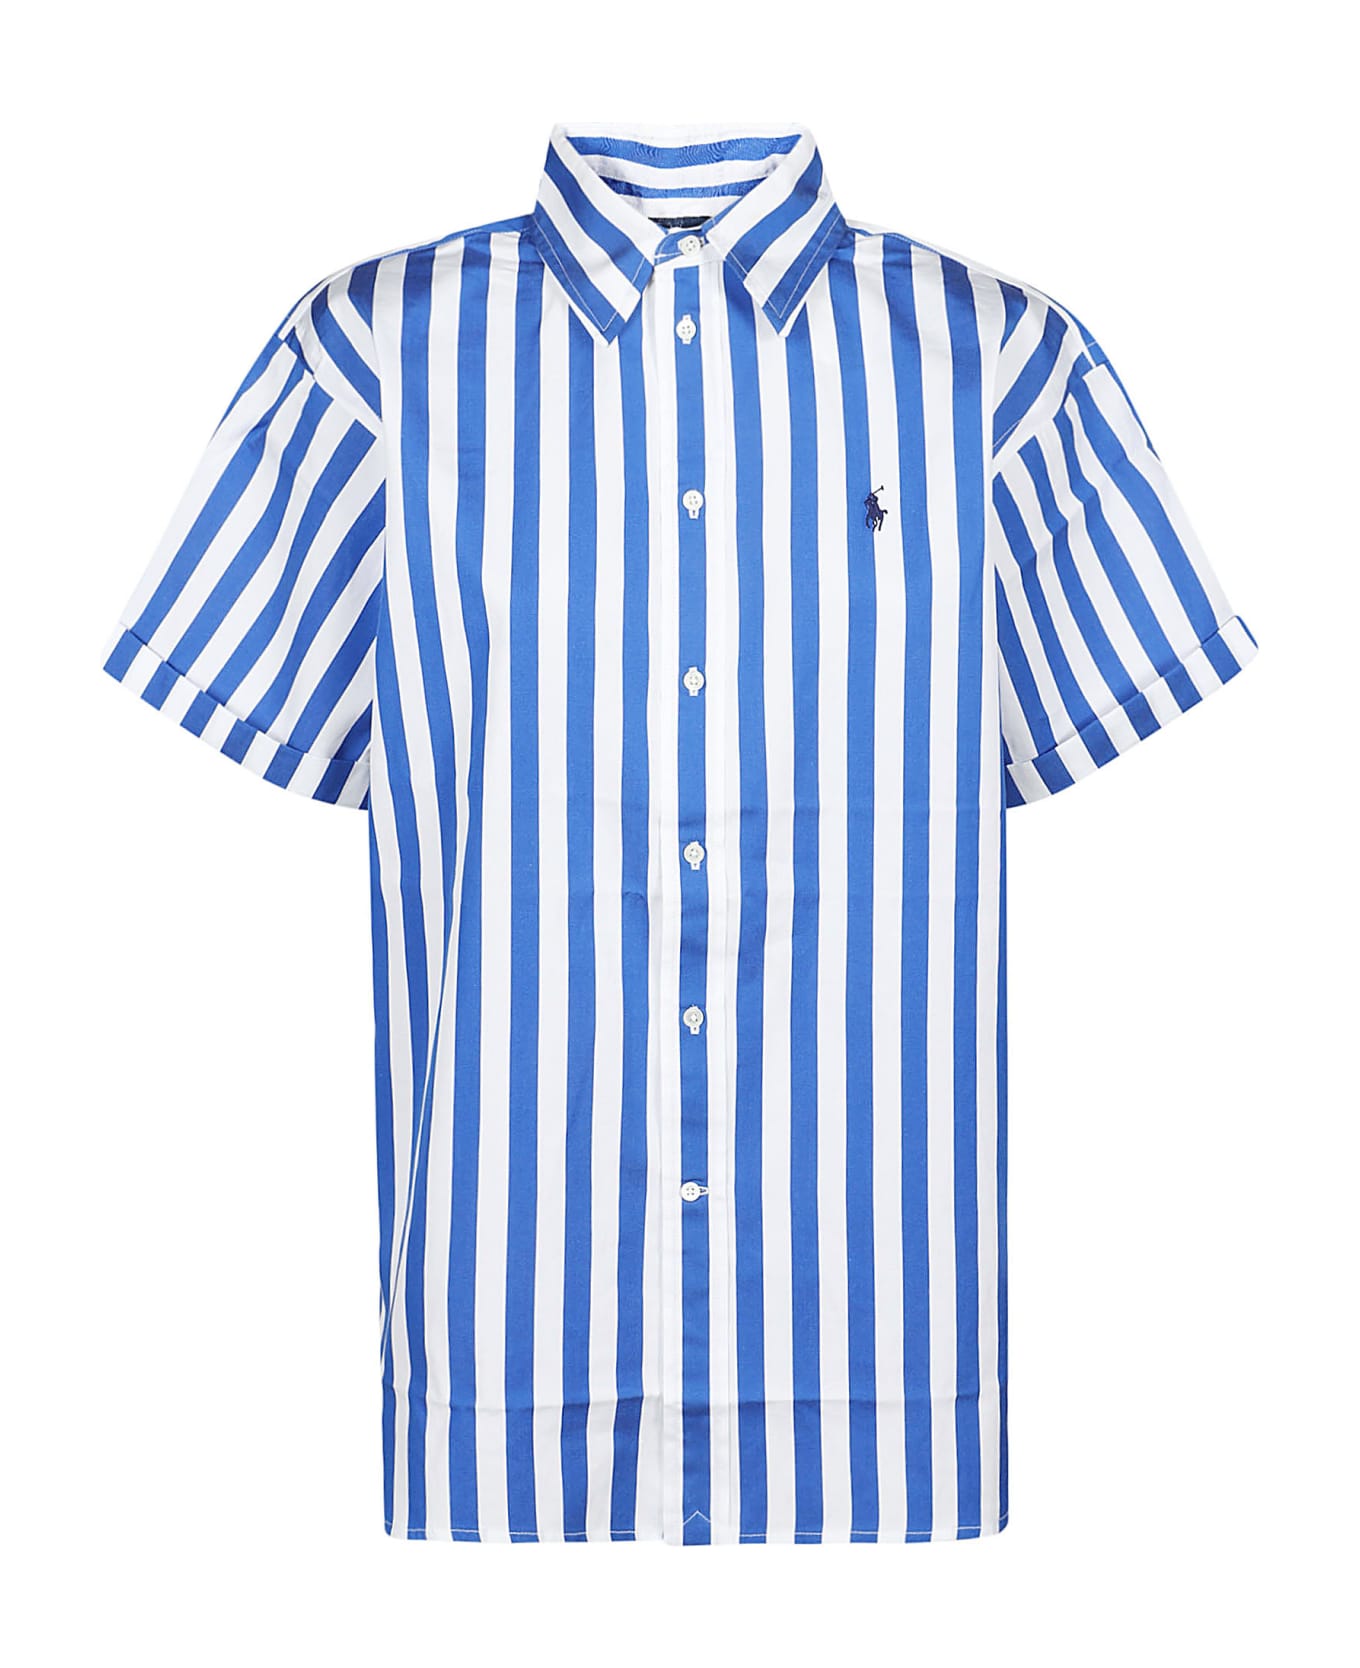 Polo Ralph Lauren Short Sleeve Button Front Shirt - Blue/white